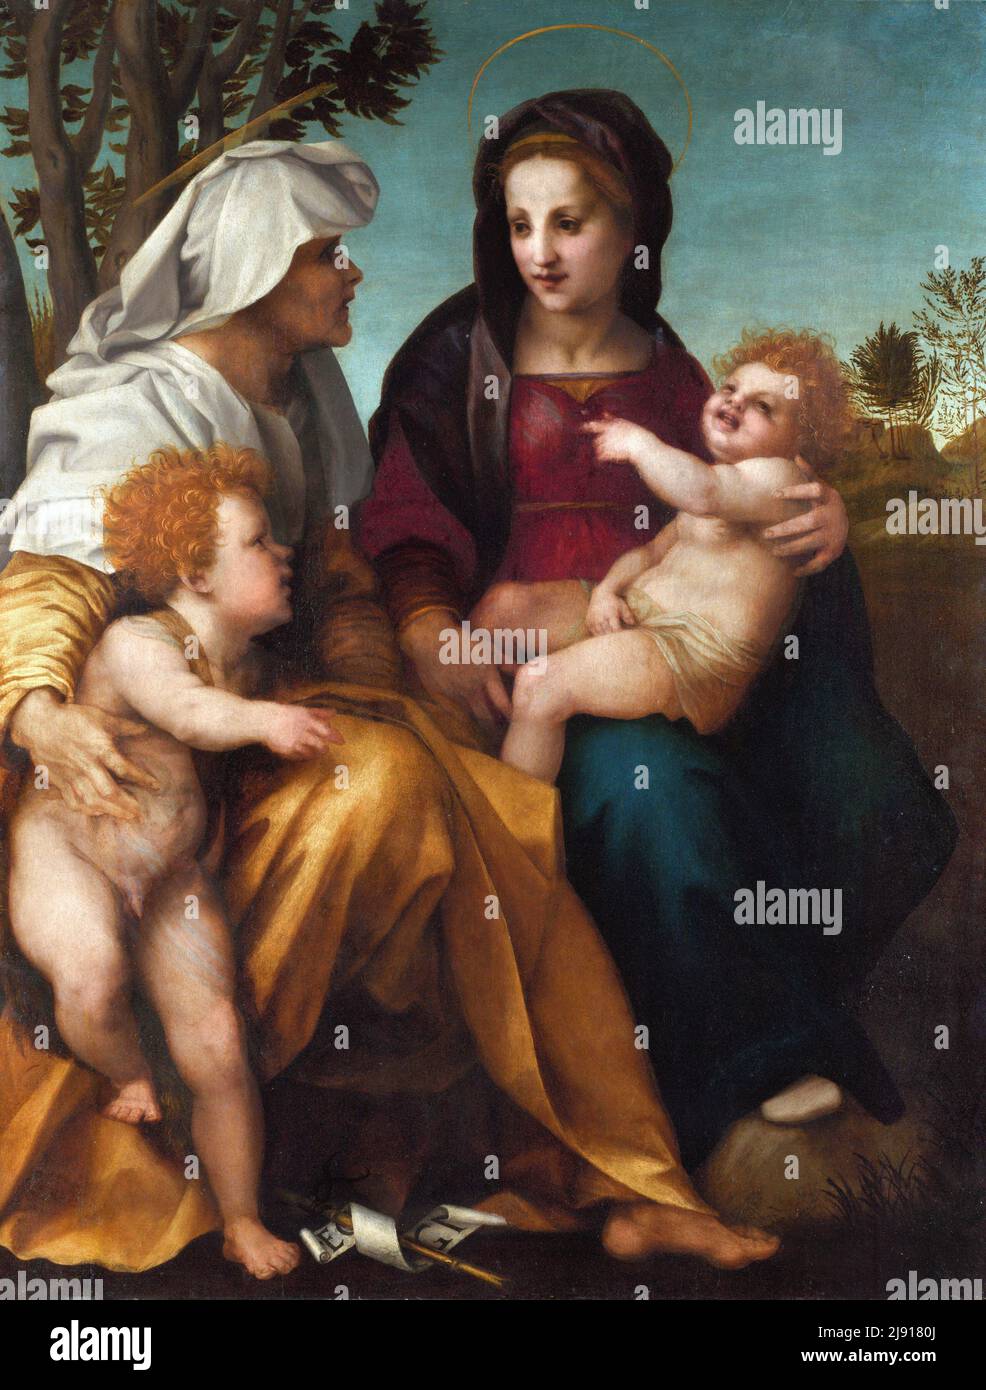 La Madonna et l'enfant avec Saint Elizabeth et Saint Jean-Baptiste par Andrea del Sarto (Andrea d'Agnolo : 1486-1530), huile sur bois, c. 1513 Banque D'Images